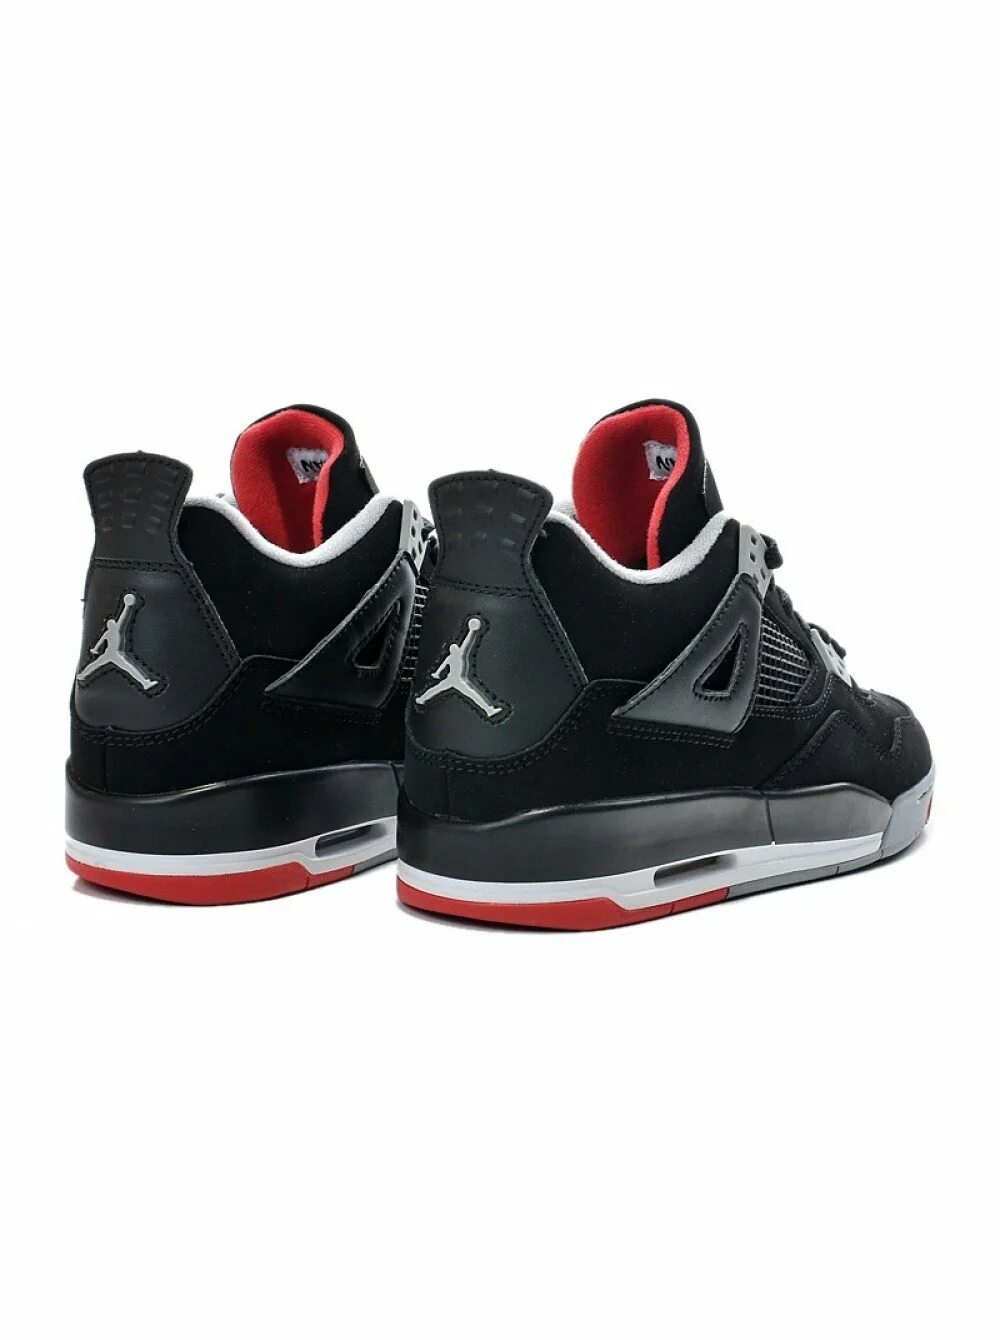 Мужские кроссовки air jordan. Nike Air Jordan 4. Nike Air Jordan 4 Retro. Nike Air Jordan 4 Retro Black. Nike Air Jordan 4 Retro черные.